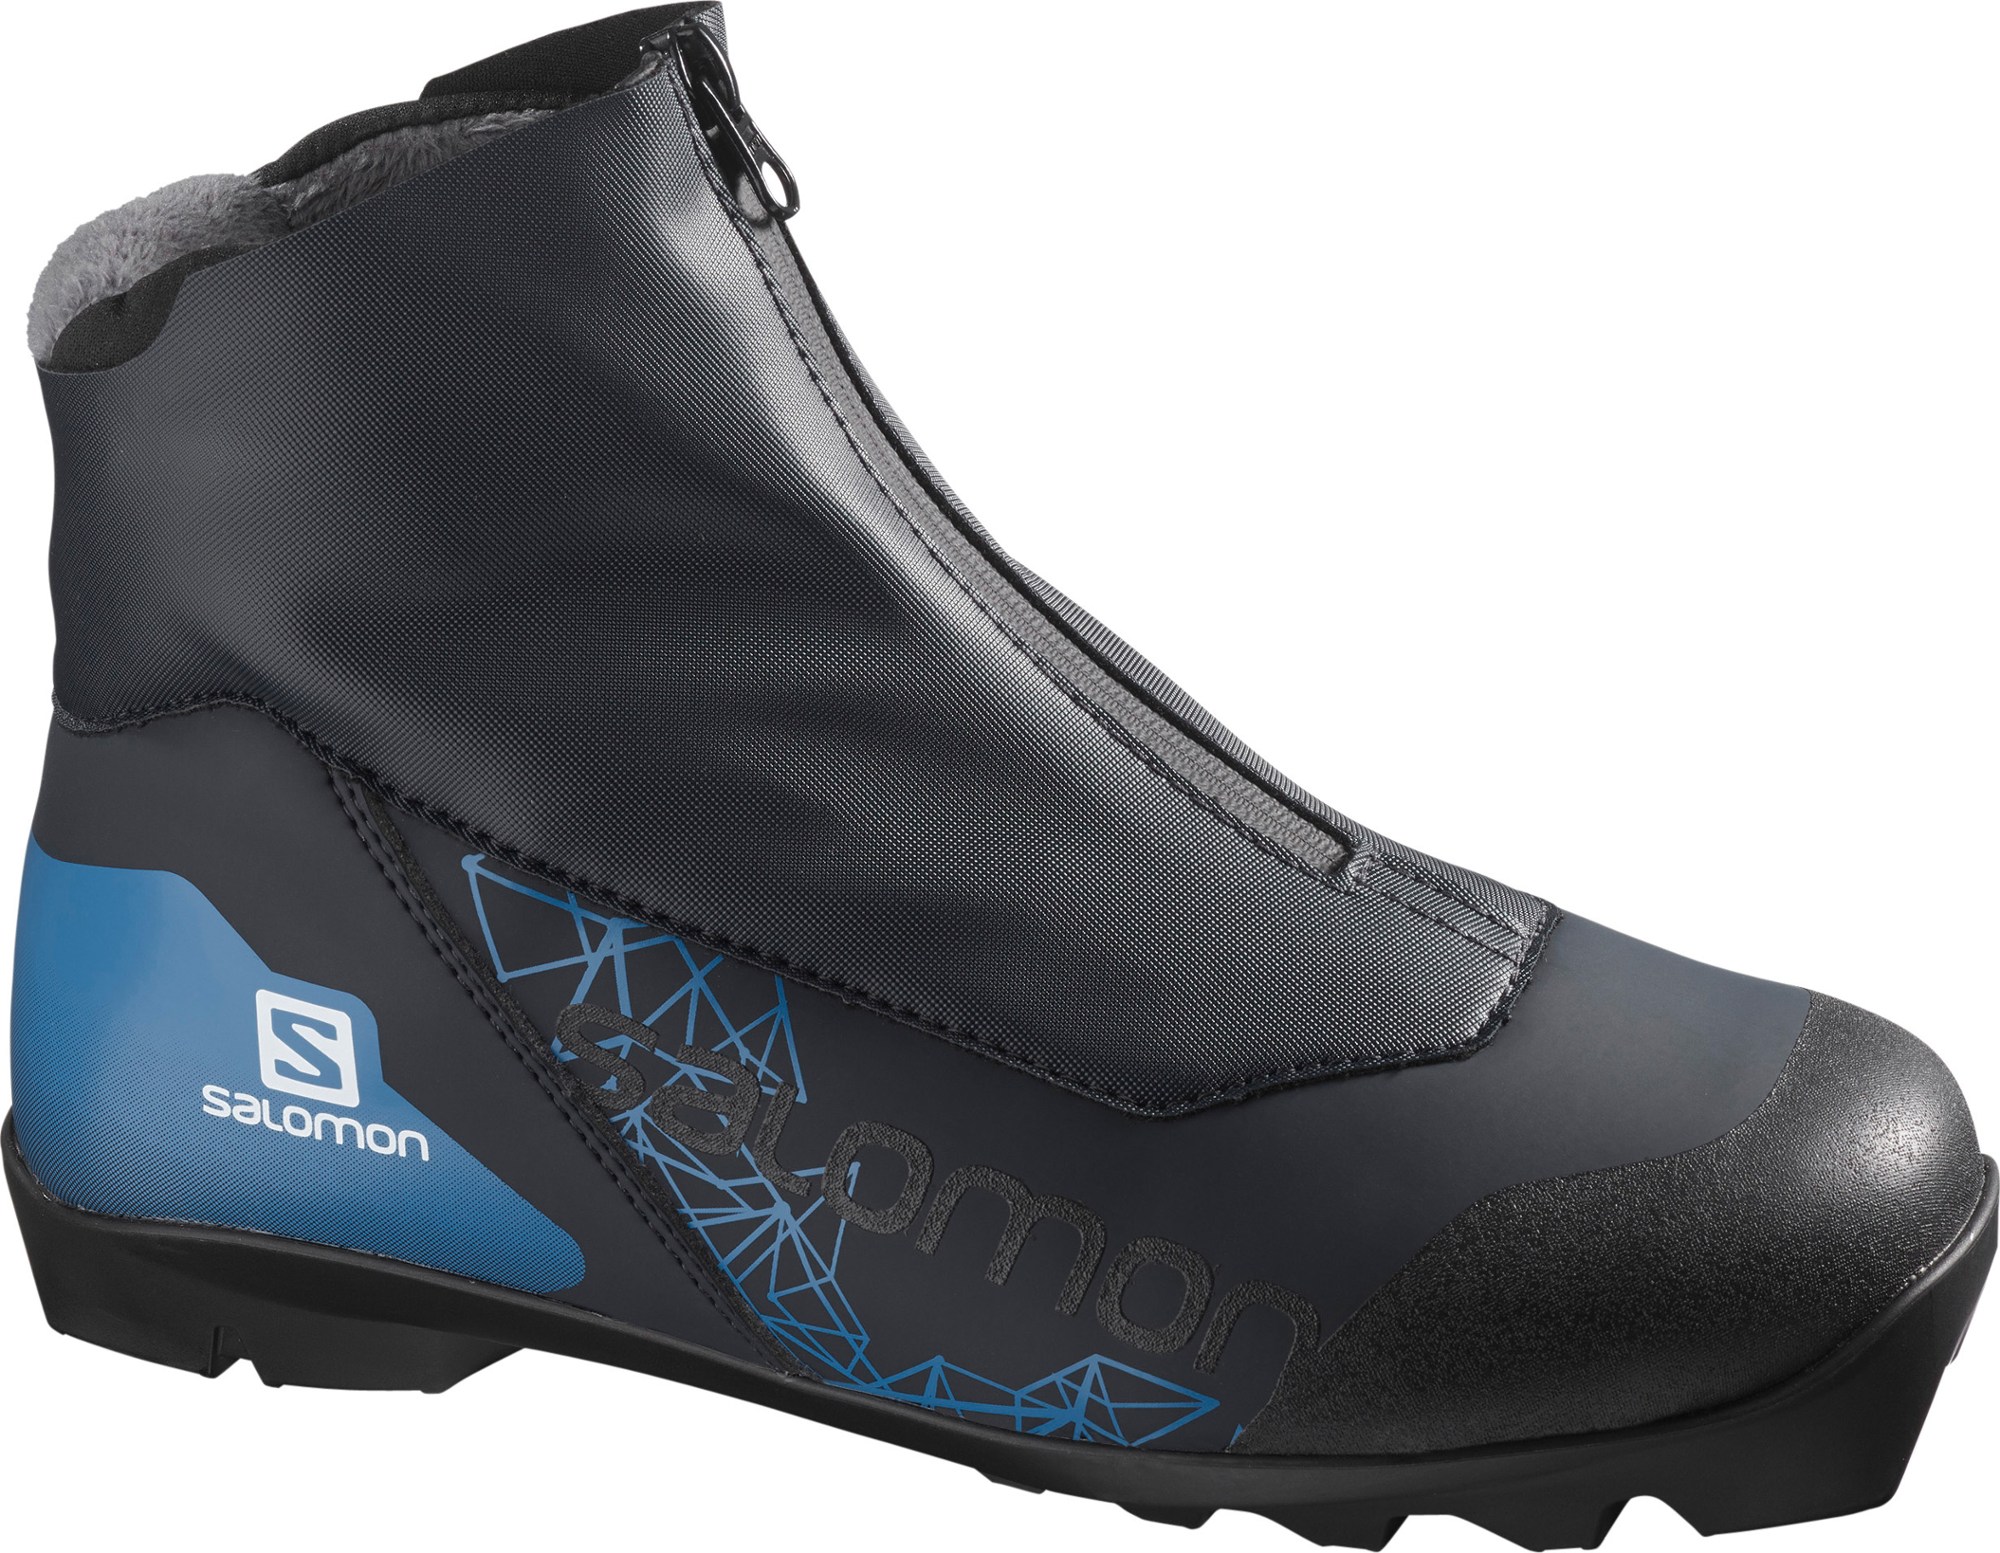 Ботинки для беговых лыж Vitane Prolink — женские Salomon, черный